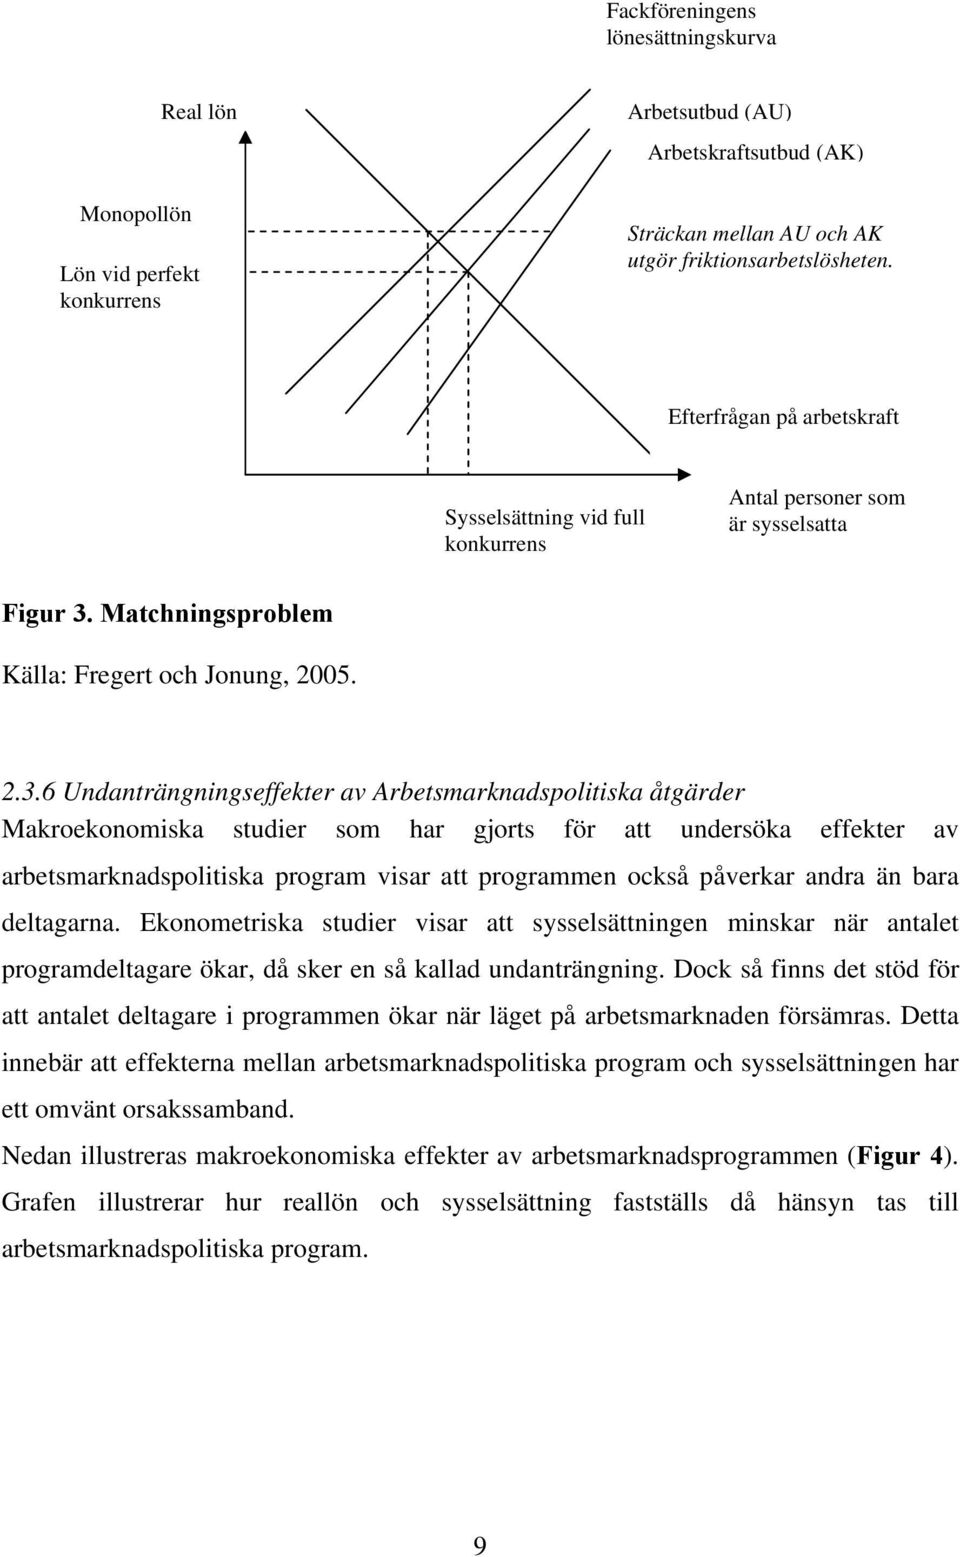 Matchningsproblem Källa: Fregert och Jonung, 2005. 2.3.